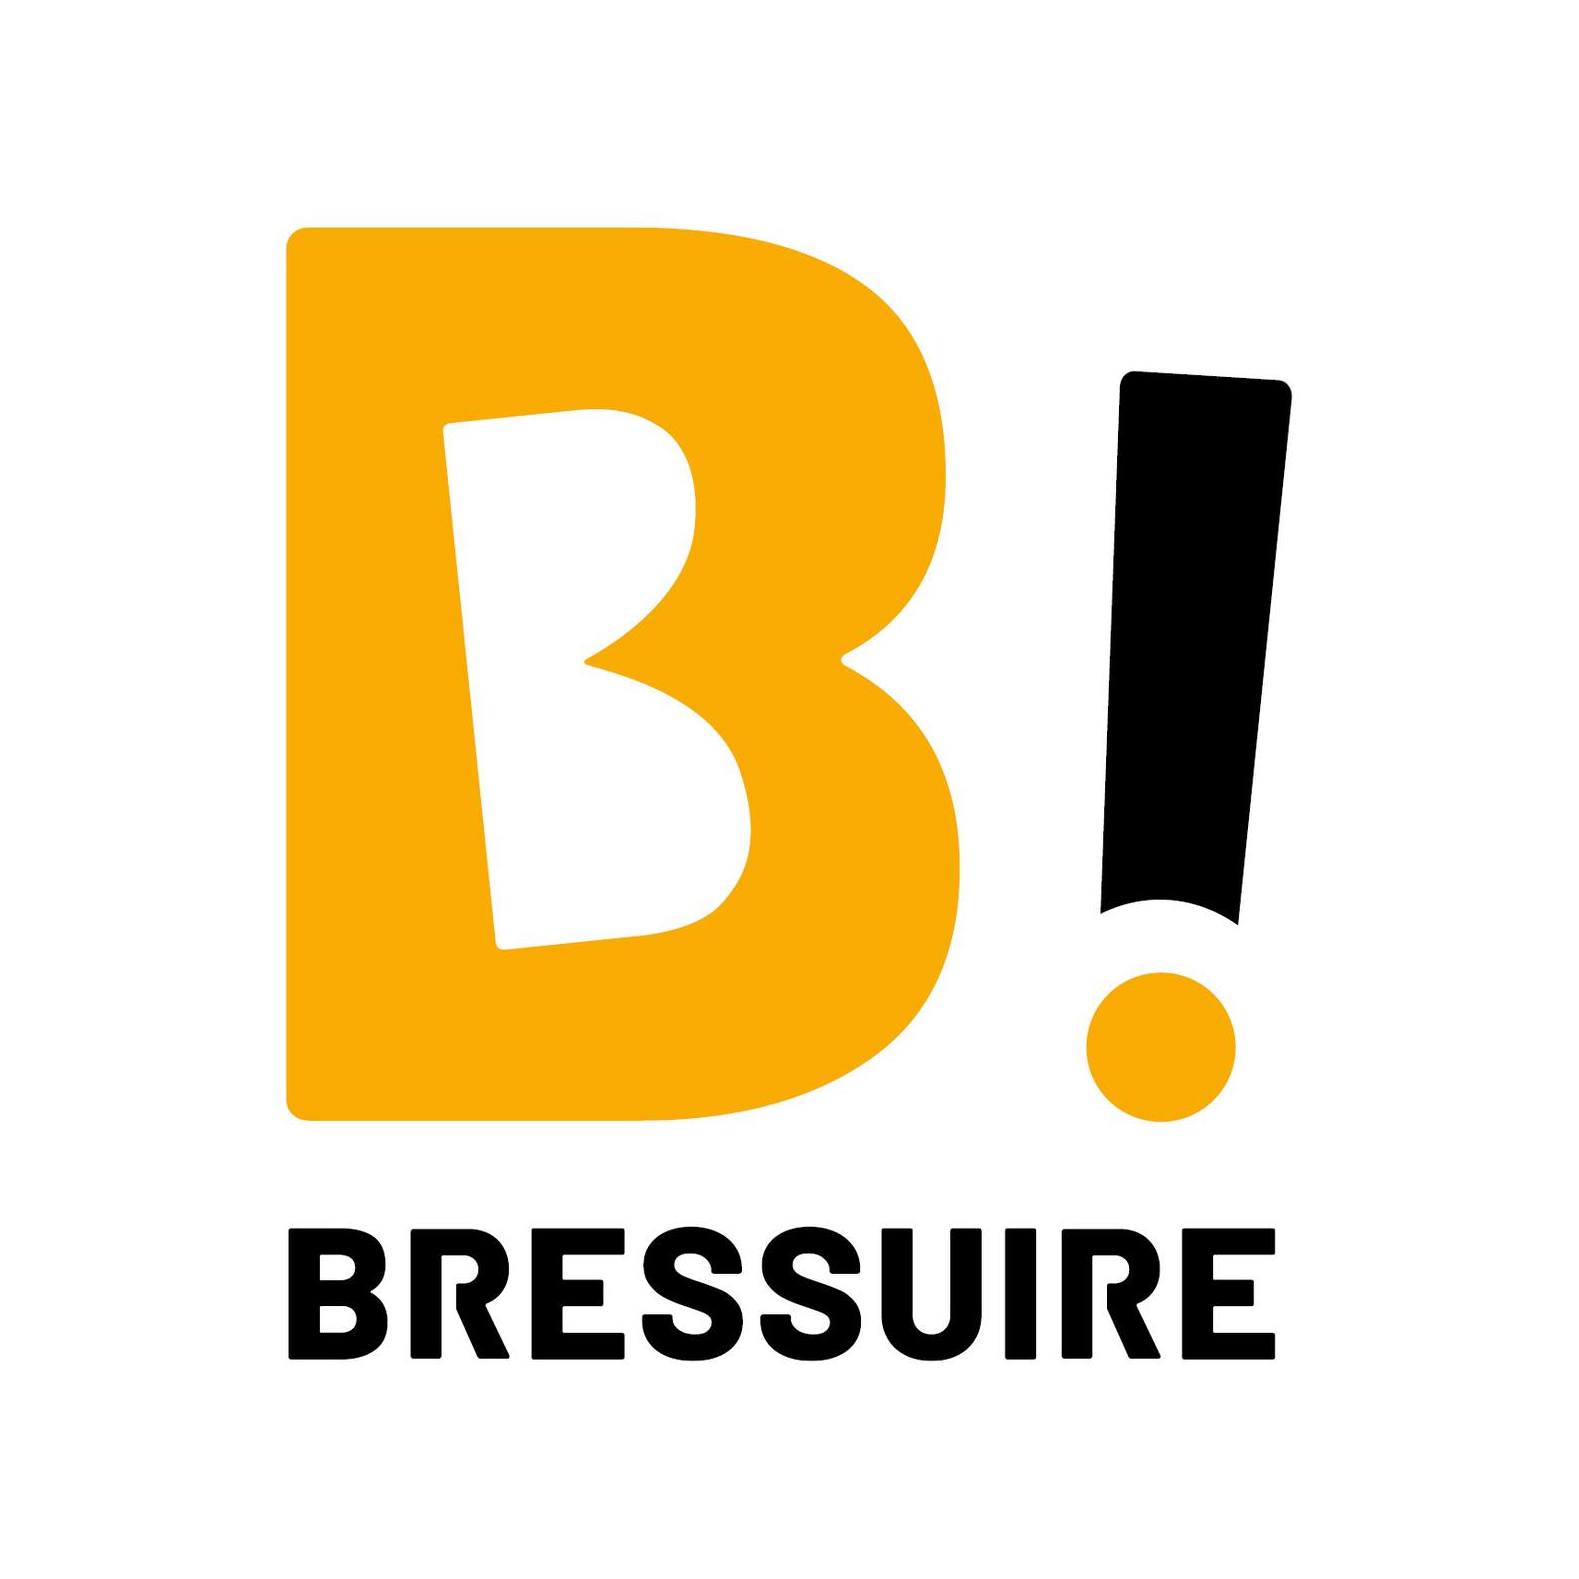 Bressuire